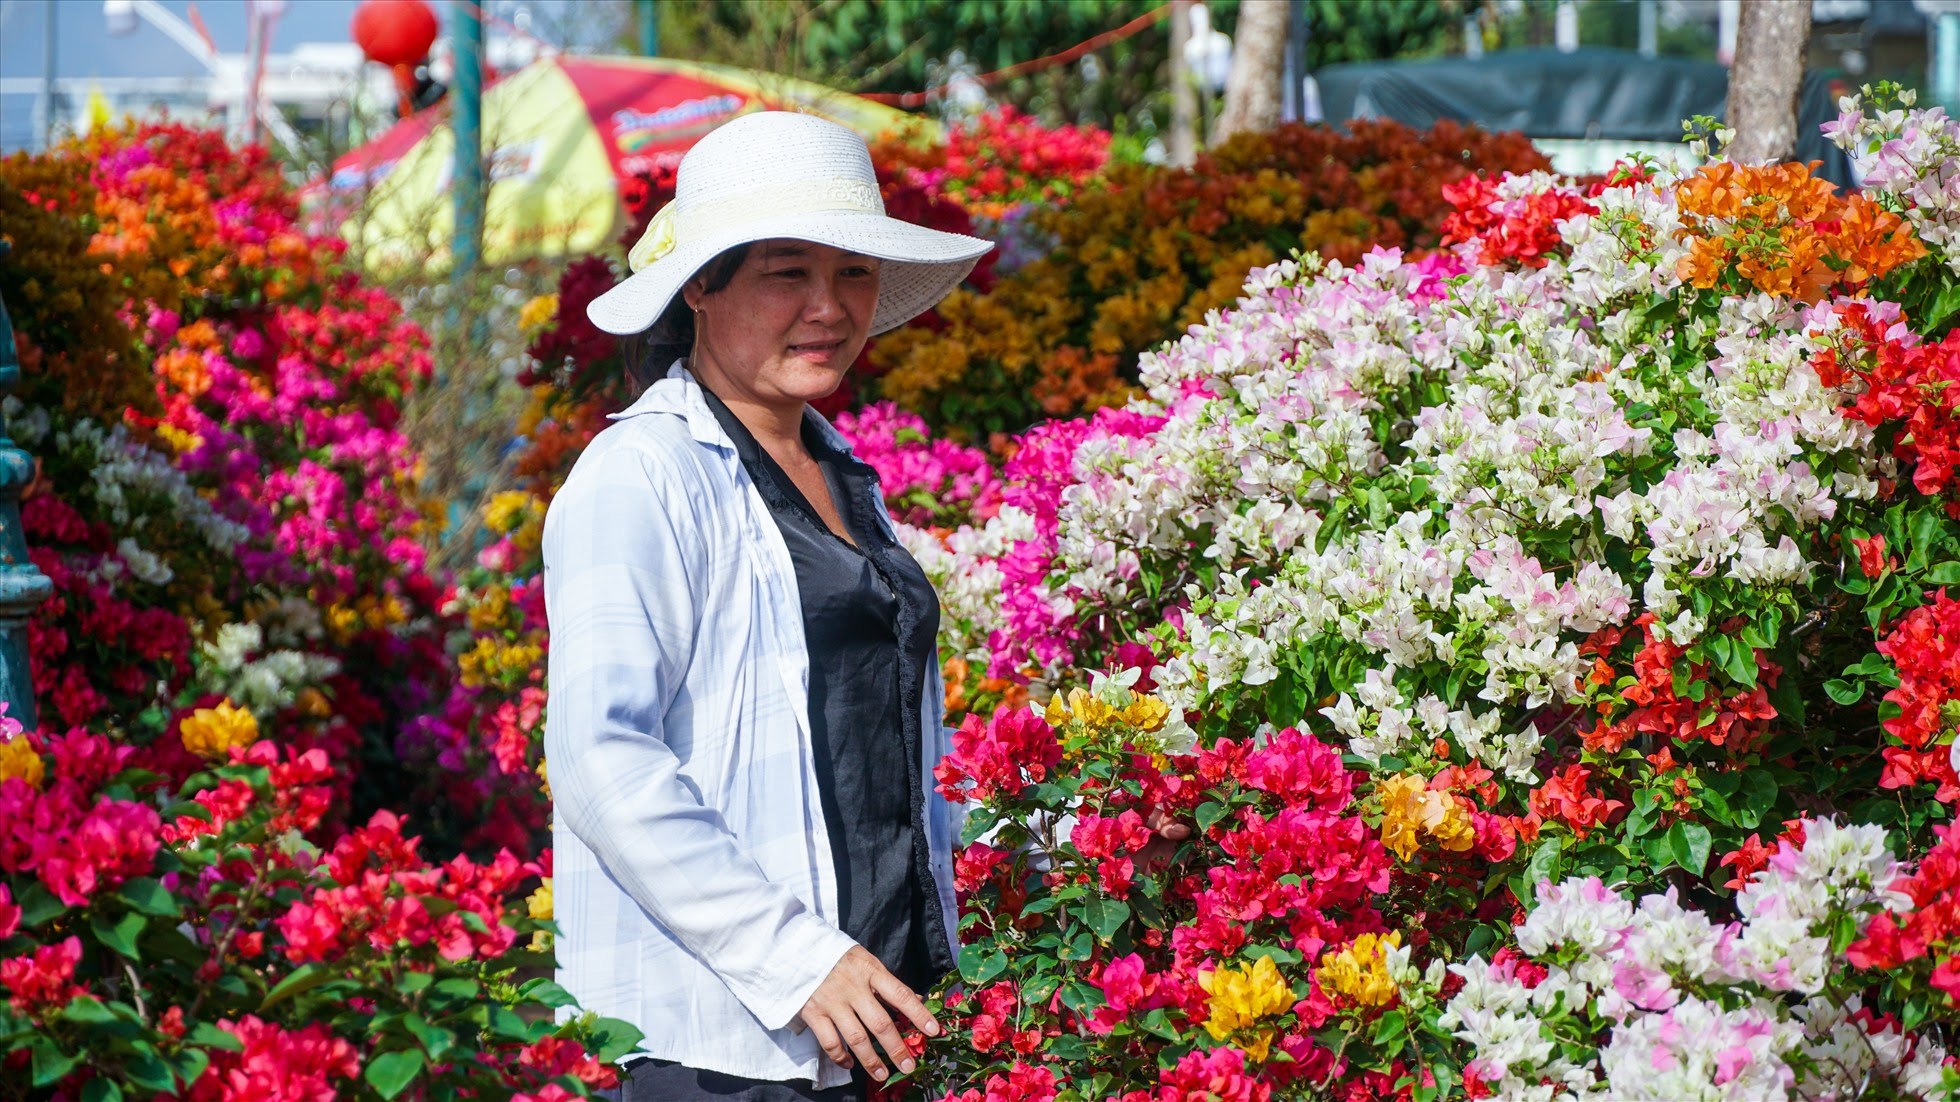 Là tiểu thương bán hoa giấy, chị Phan Thị Mỹ Lan (38 tuổi, tỉnh Bến Tre) cho hay, năm trước còn ảnh hưởng của dịch bệnh nhưng vẫn bán được. Năm nay vắng khách từ ở vườn, mong những ngày cuối năm bán được để được về sớm.